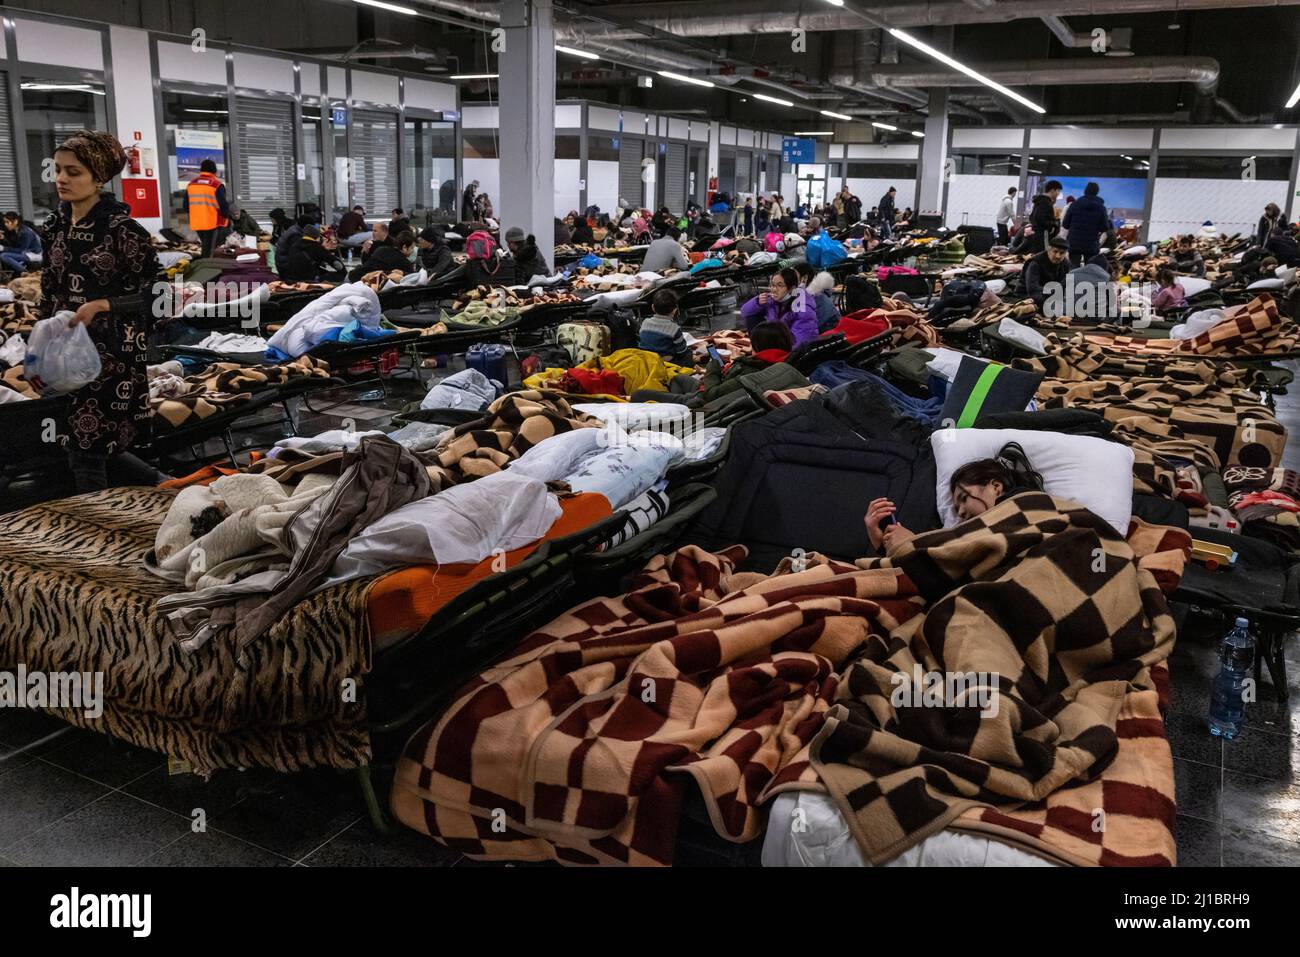 Les réfugiés d'Ukraine ont atteint le point central de collecte des réfugiés dans un centre logistique près de Korczowa, dans la zone frontalière entre la Pologne et l'Ukraine. Ici, ils peuvent se reposer sur les lits bébé fournis. Ici, ils sont également fournis avec de la nourriture et des vêtements, puis transportés plus loin en bus vers d'autres villes. Banque D'Images